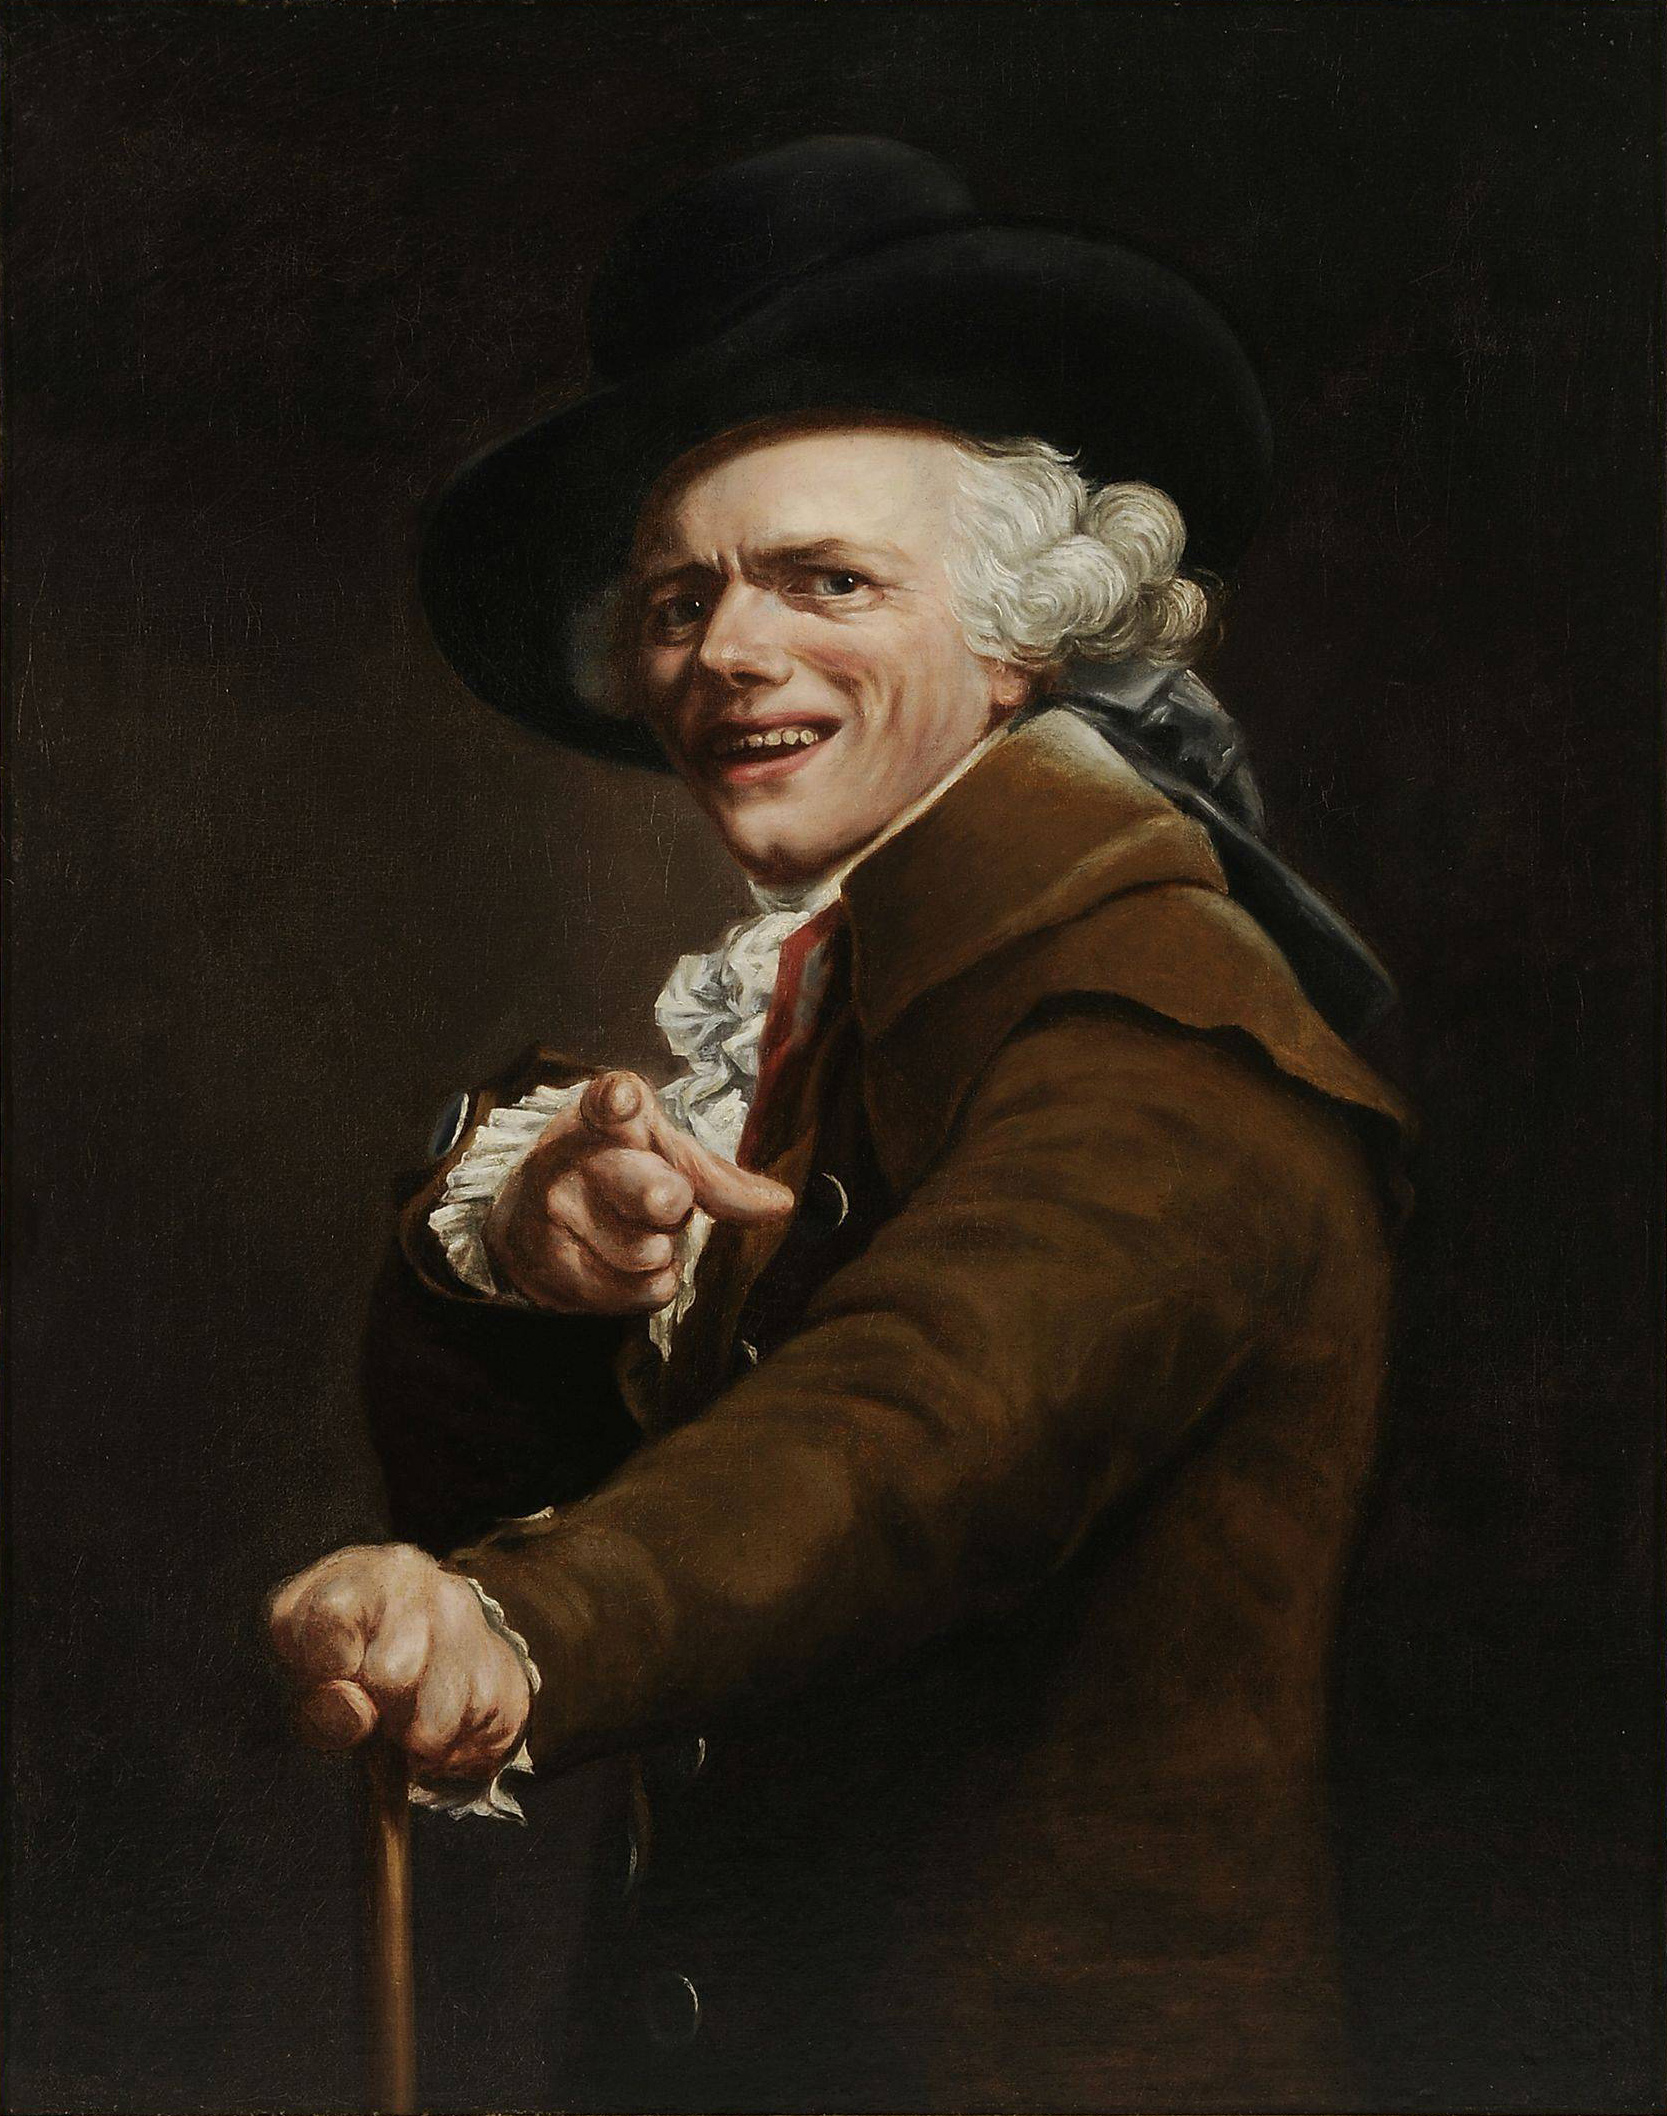 Autoportrait moqueur by Joseph Ducreux - 1791 - 91 × 72 cm Musée du Louvre